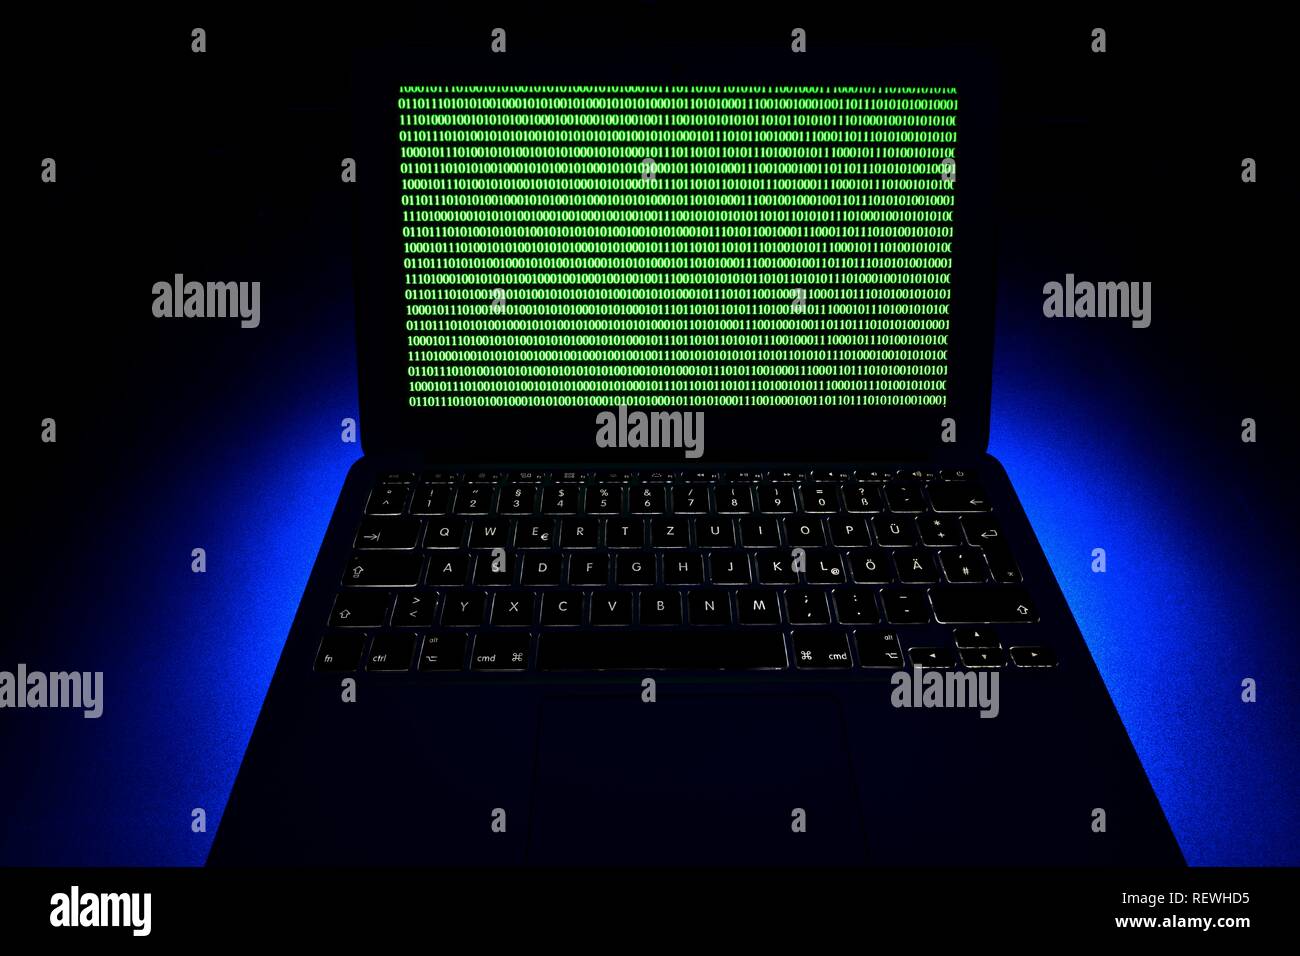 Ordinateur portable, image symbolique, la cybercriminalité, la criminalité informatique, pirate informatique, sécurité des données, Allemagne Banque D'Images